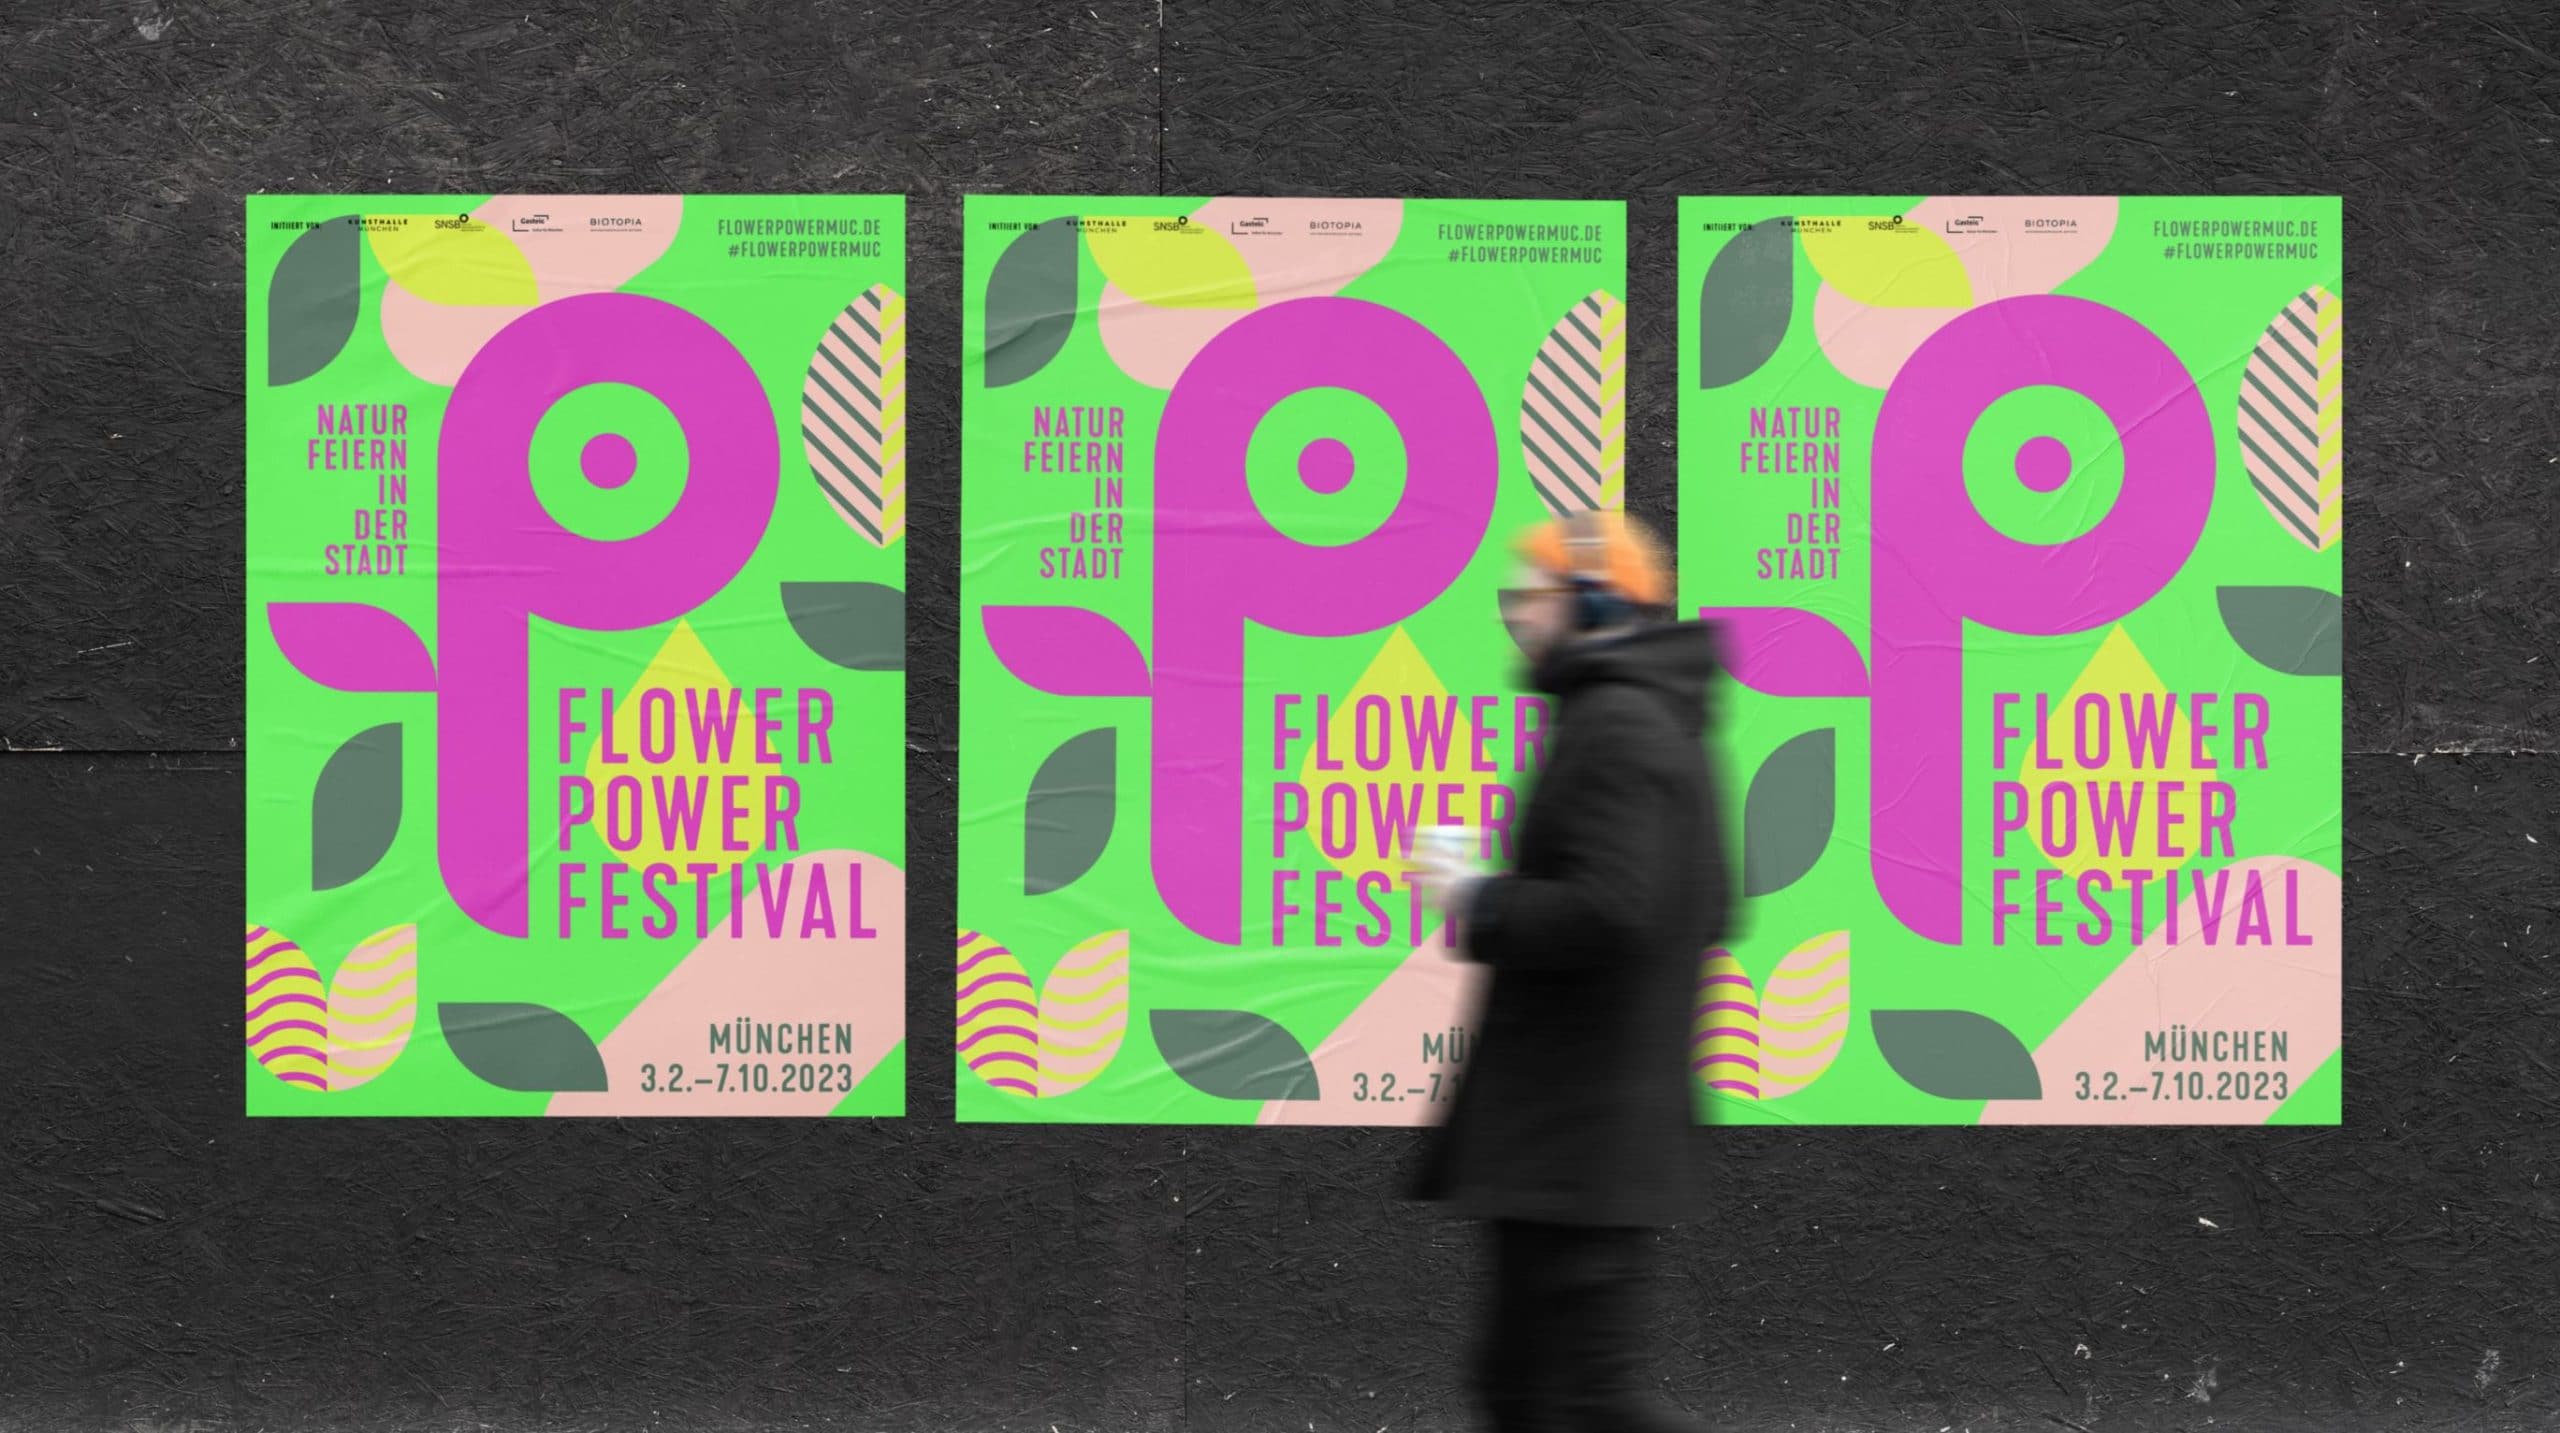 drei gleiche Mock-Up Plakate des Flower Power Festival München hängen an einer dunklen Wand nebeneinander. Sie sind hellgrün mit einem lila-farmenen "P"